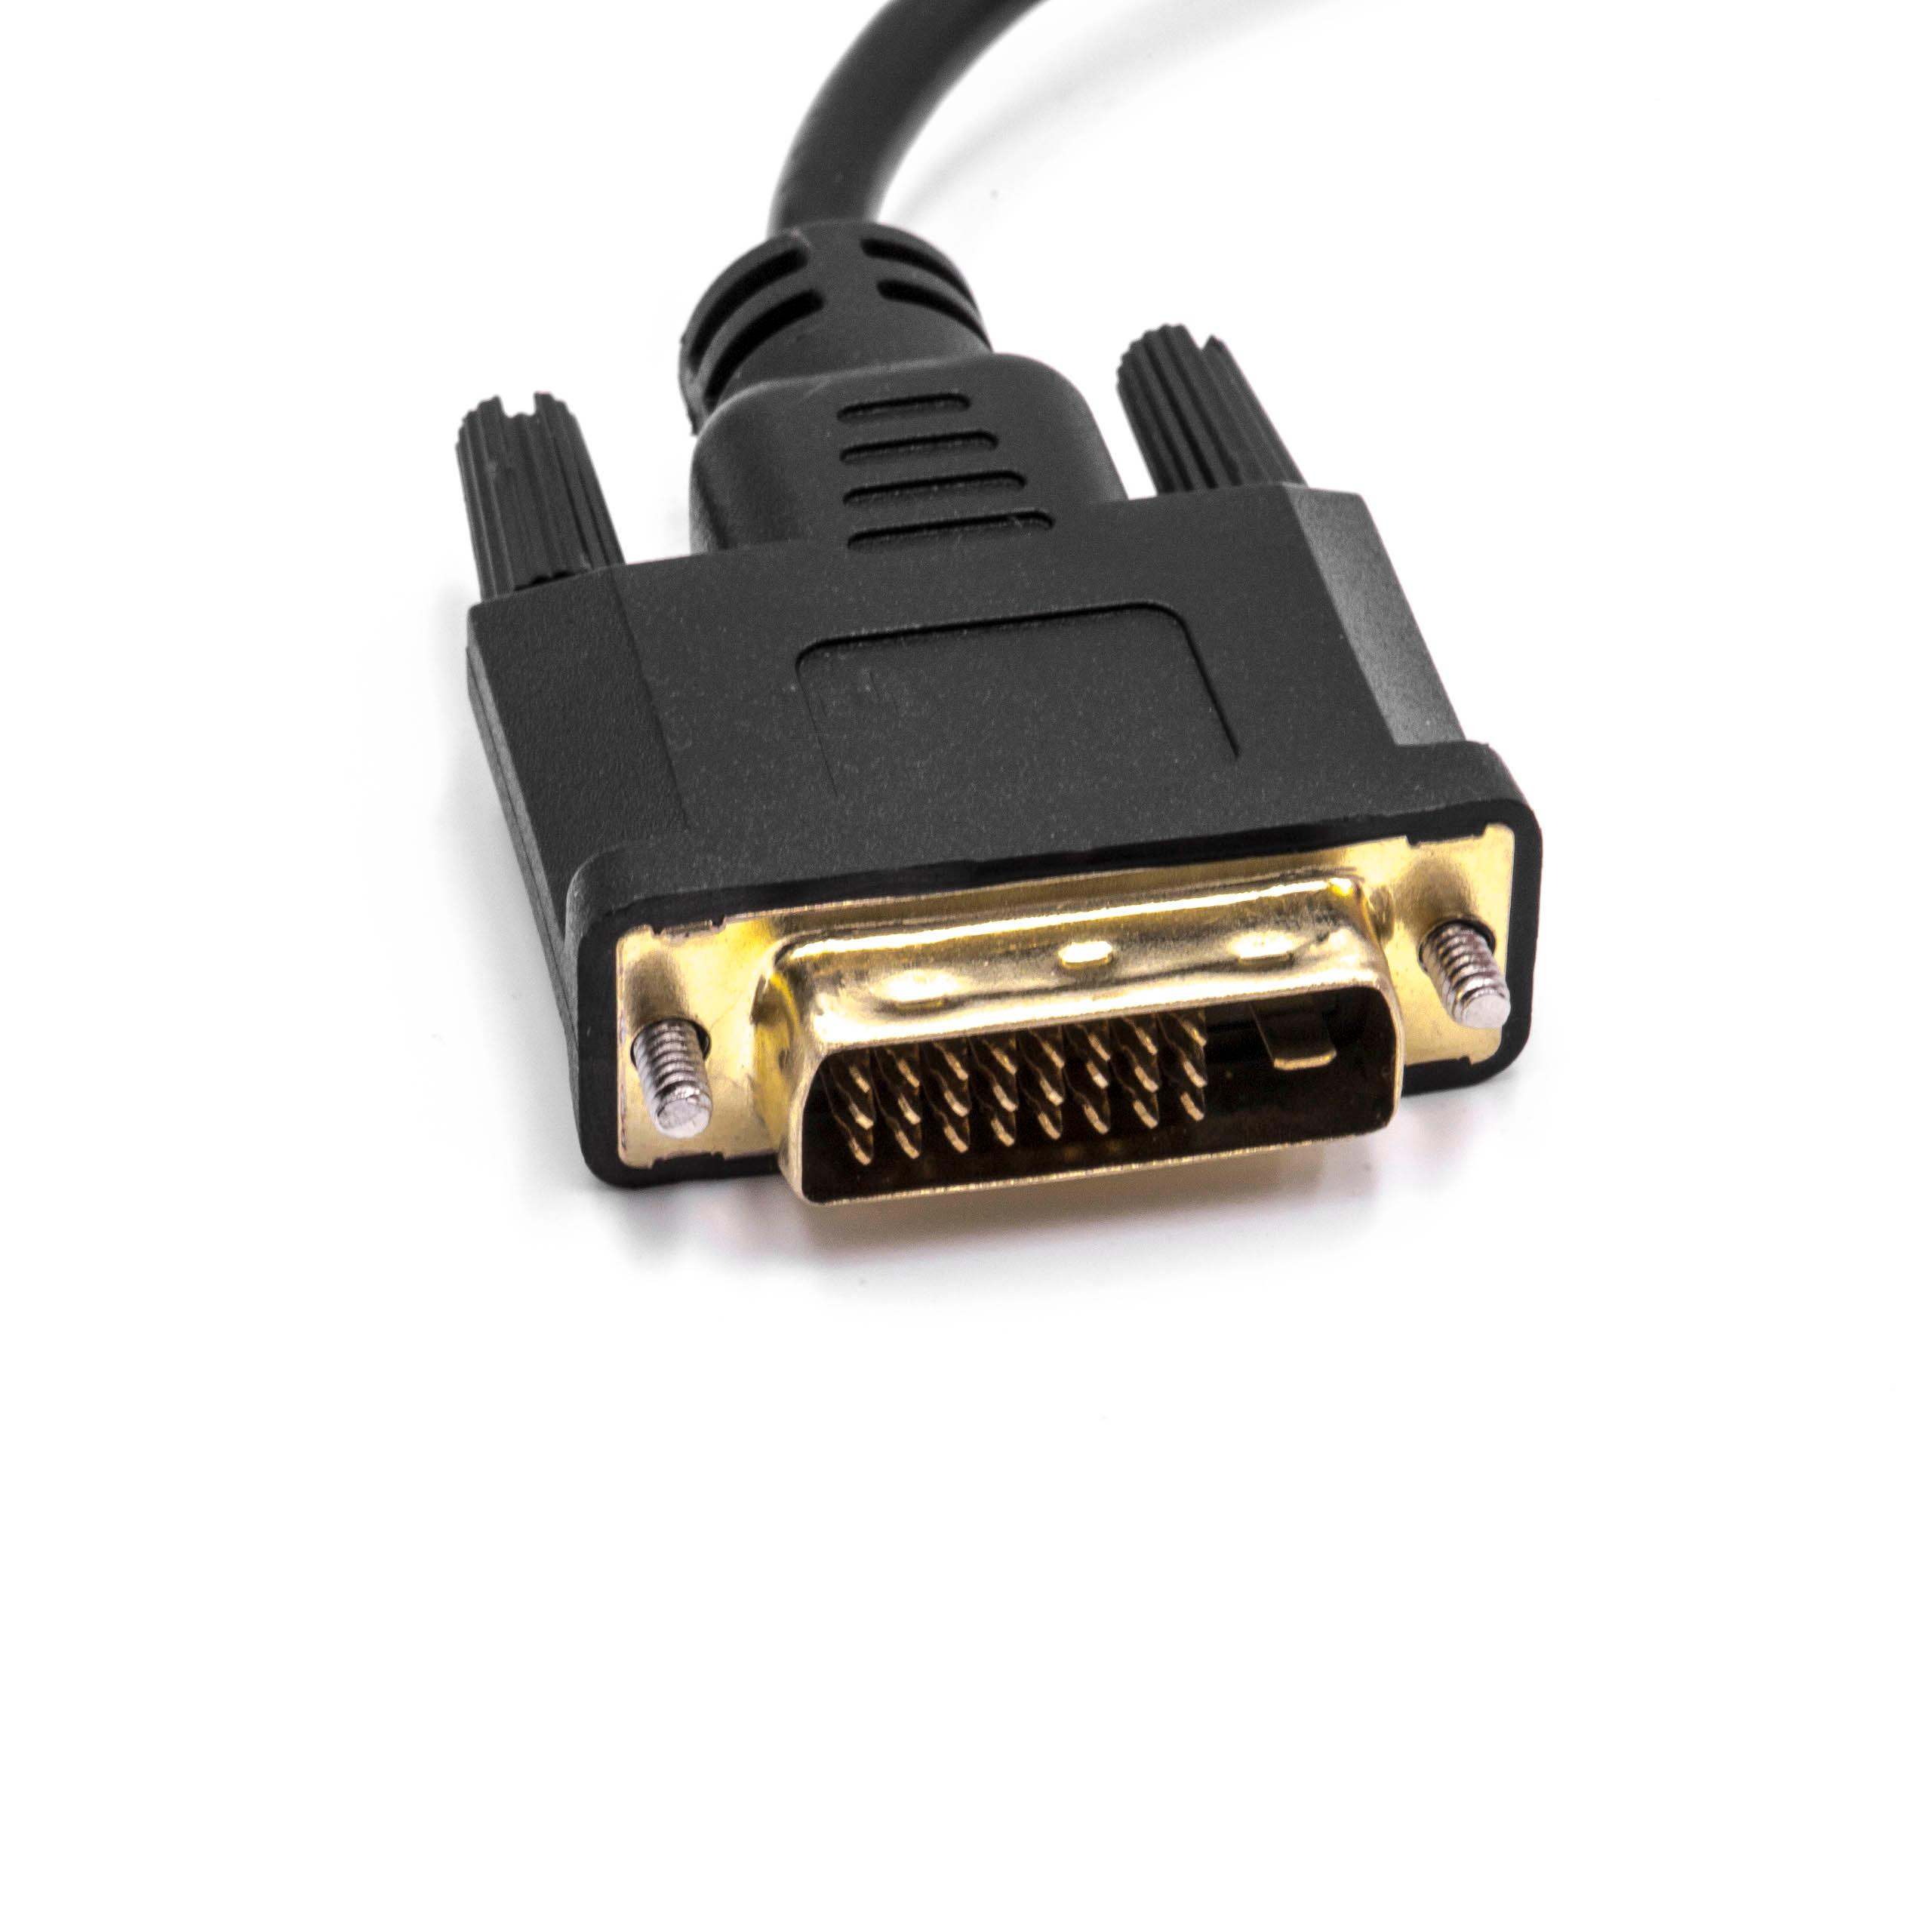 vhbw Adaptateur DVI mâle vers VGA femelle pour connexion de système DVI vers appareil VGA - Câble adaptateur, 